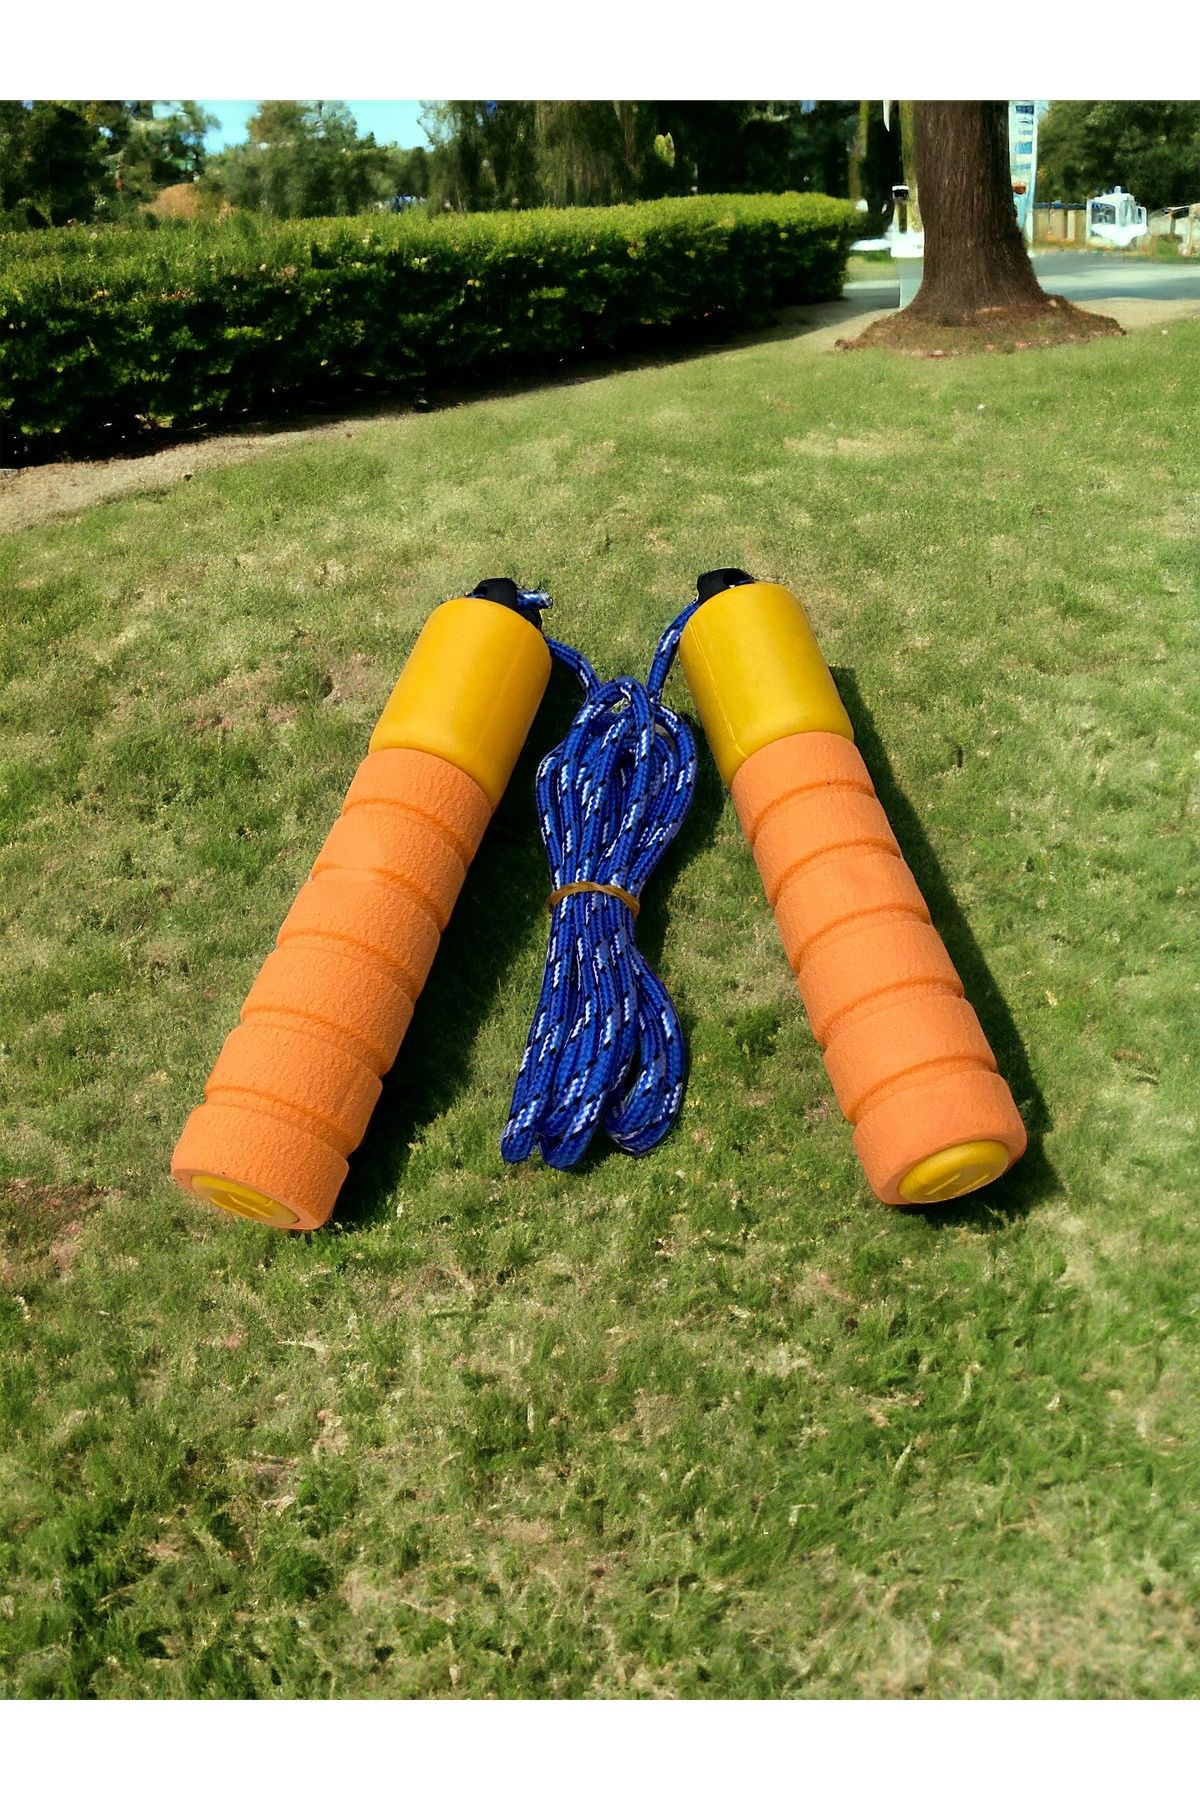 TOCSPORTS Çocuklara Özel Evde Bahçede Atlamalık - Çocuk Oyun Atlama İpi - Spor İp - 210 cm ip + 30 cm Sap